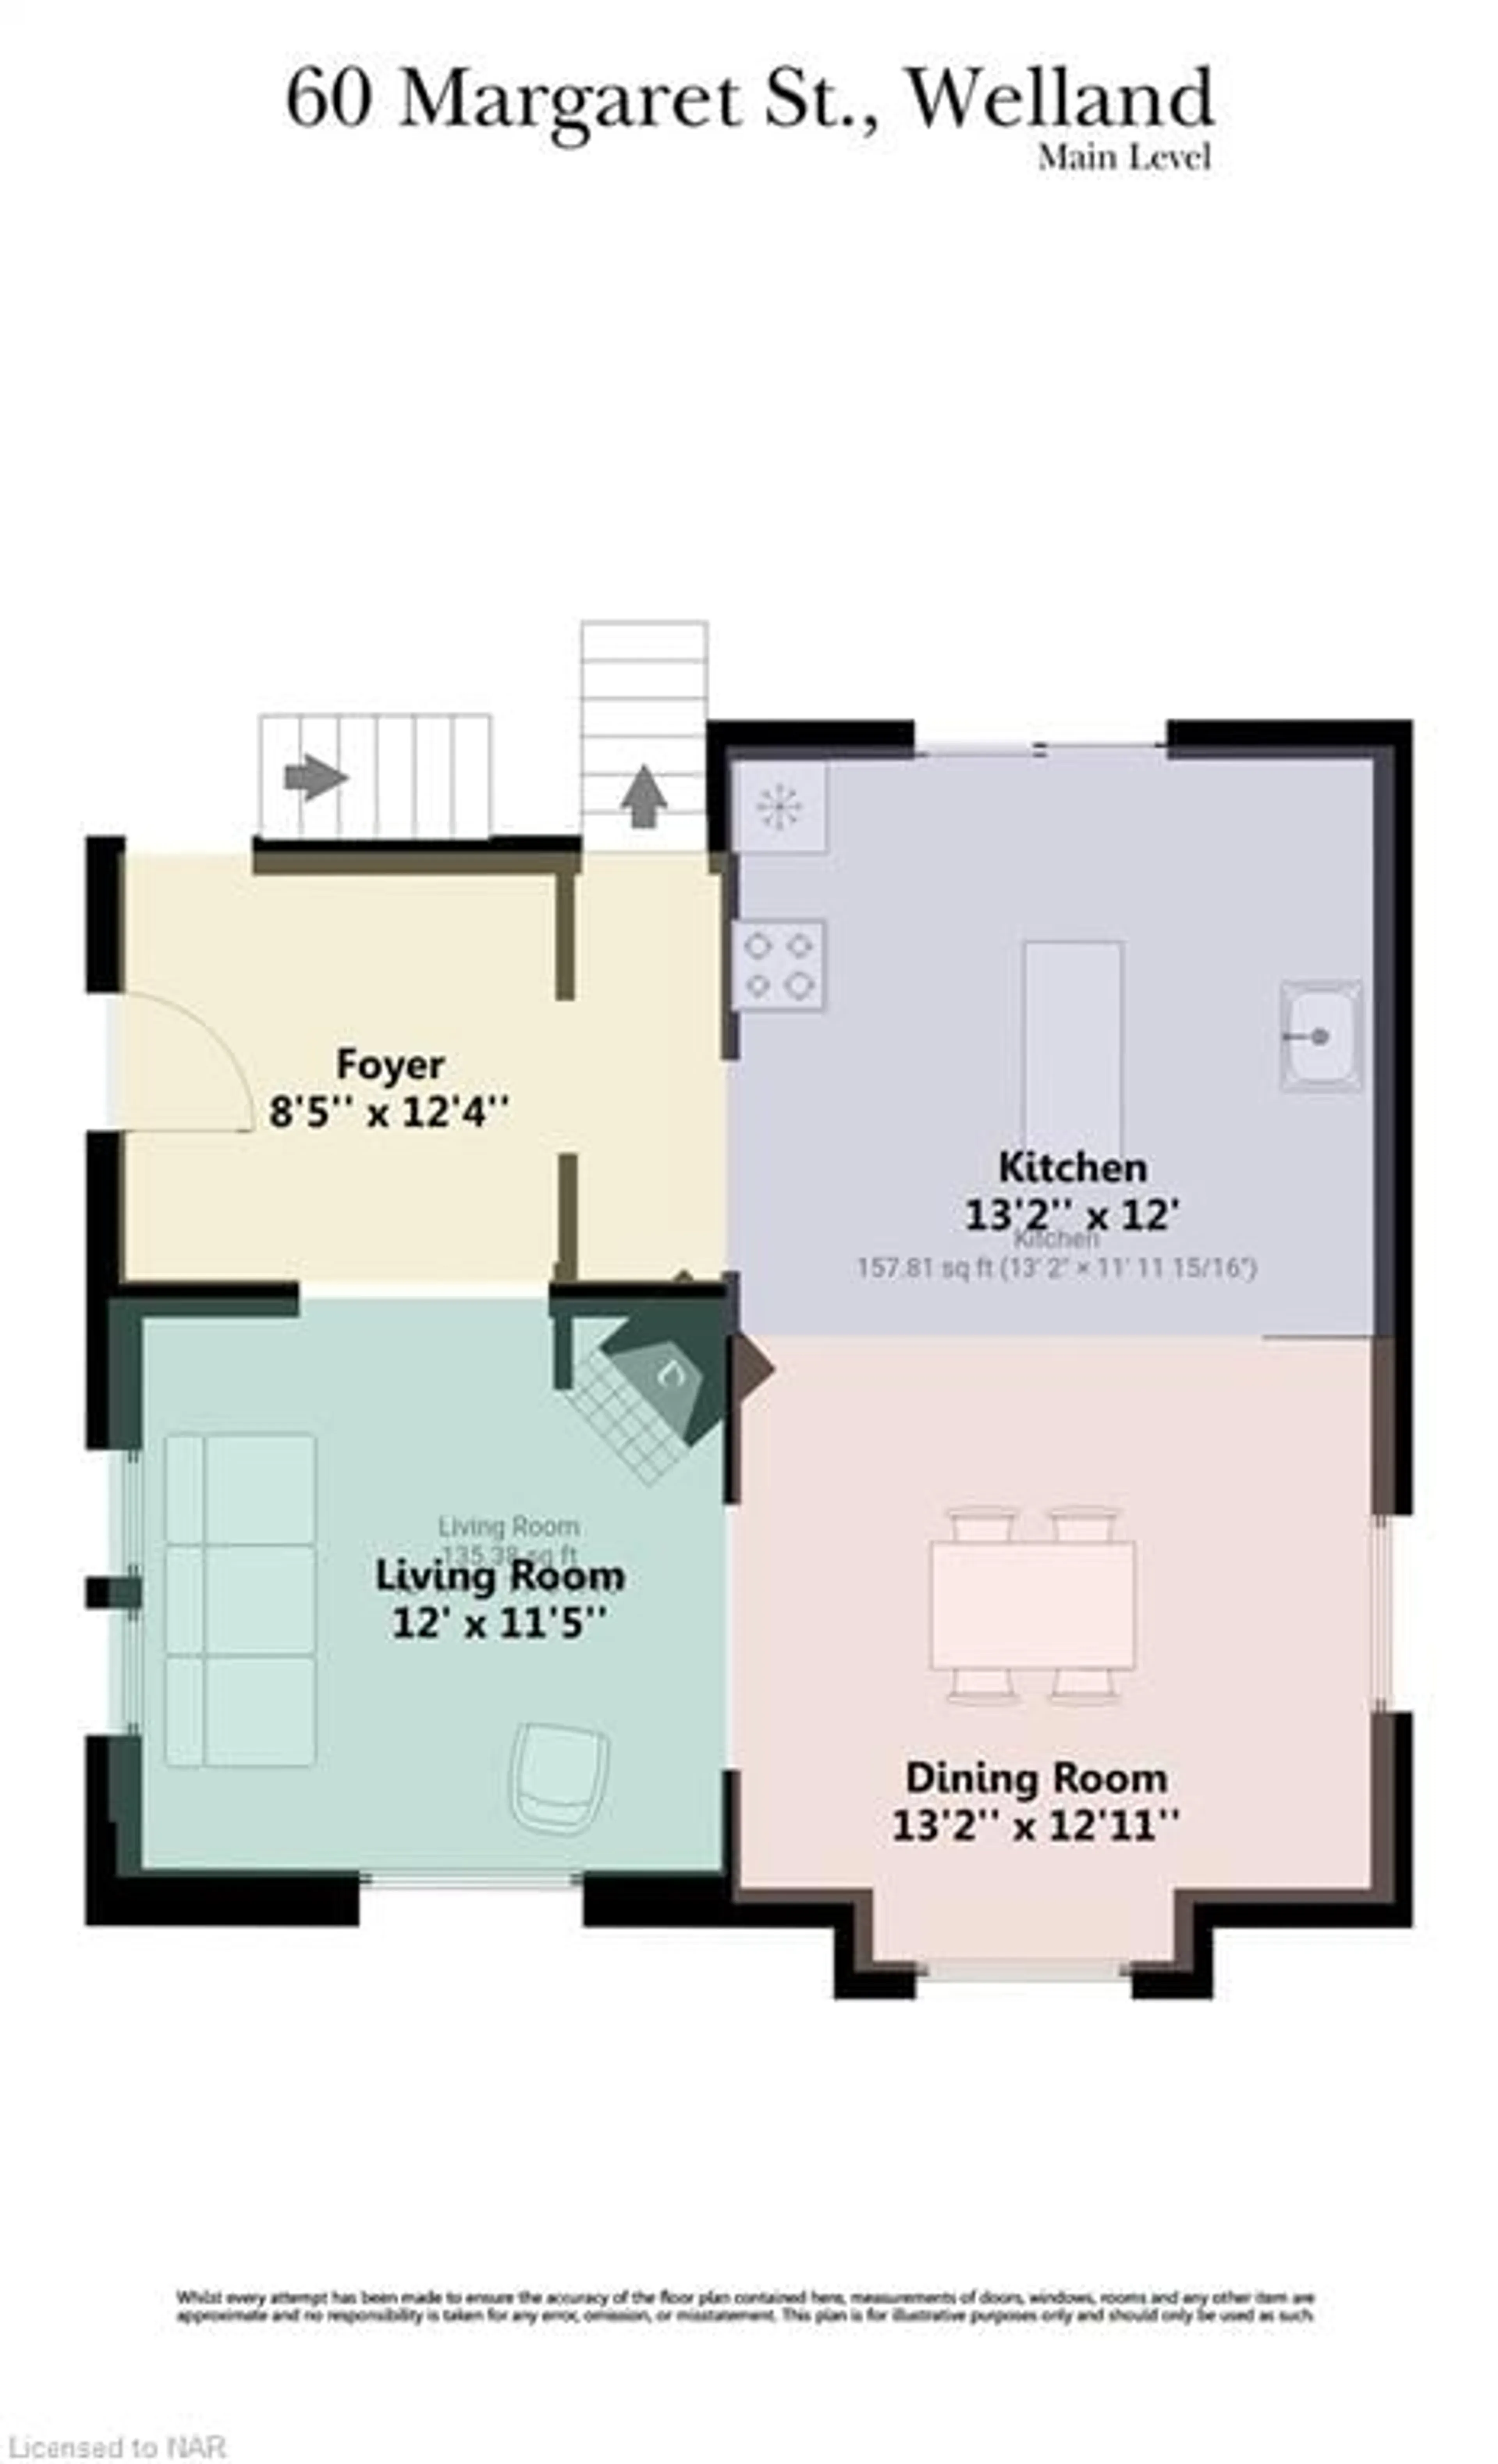 Floor plan for 60 Margaret St, Welland Ontario L3C 3Z8